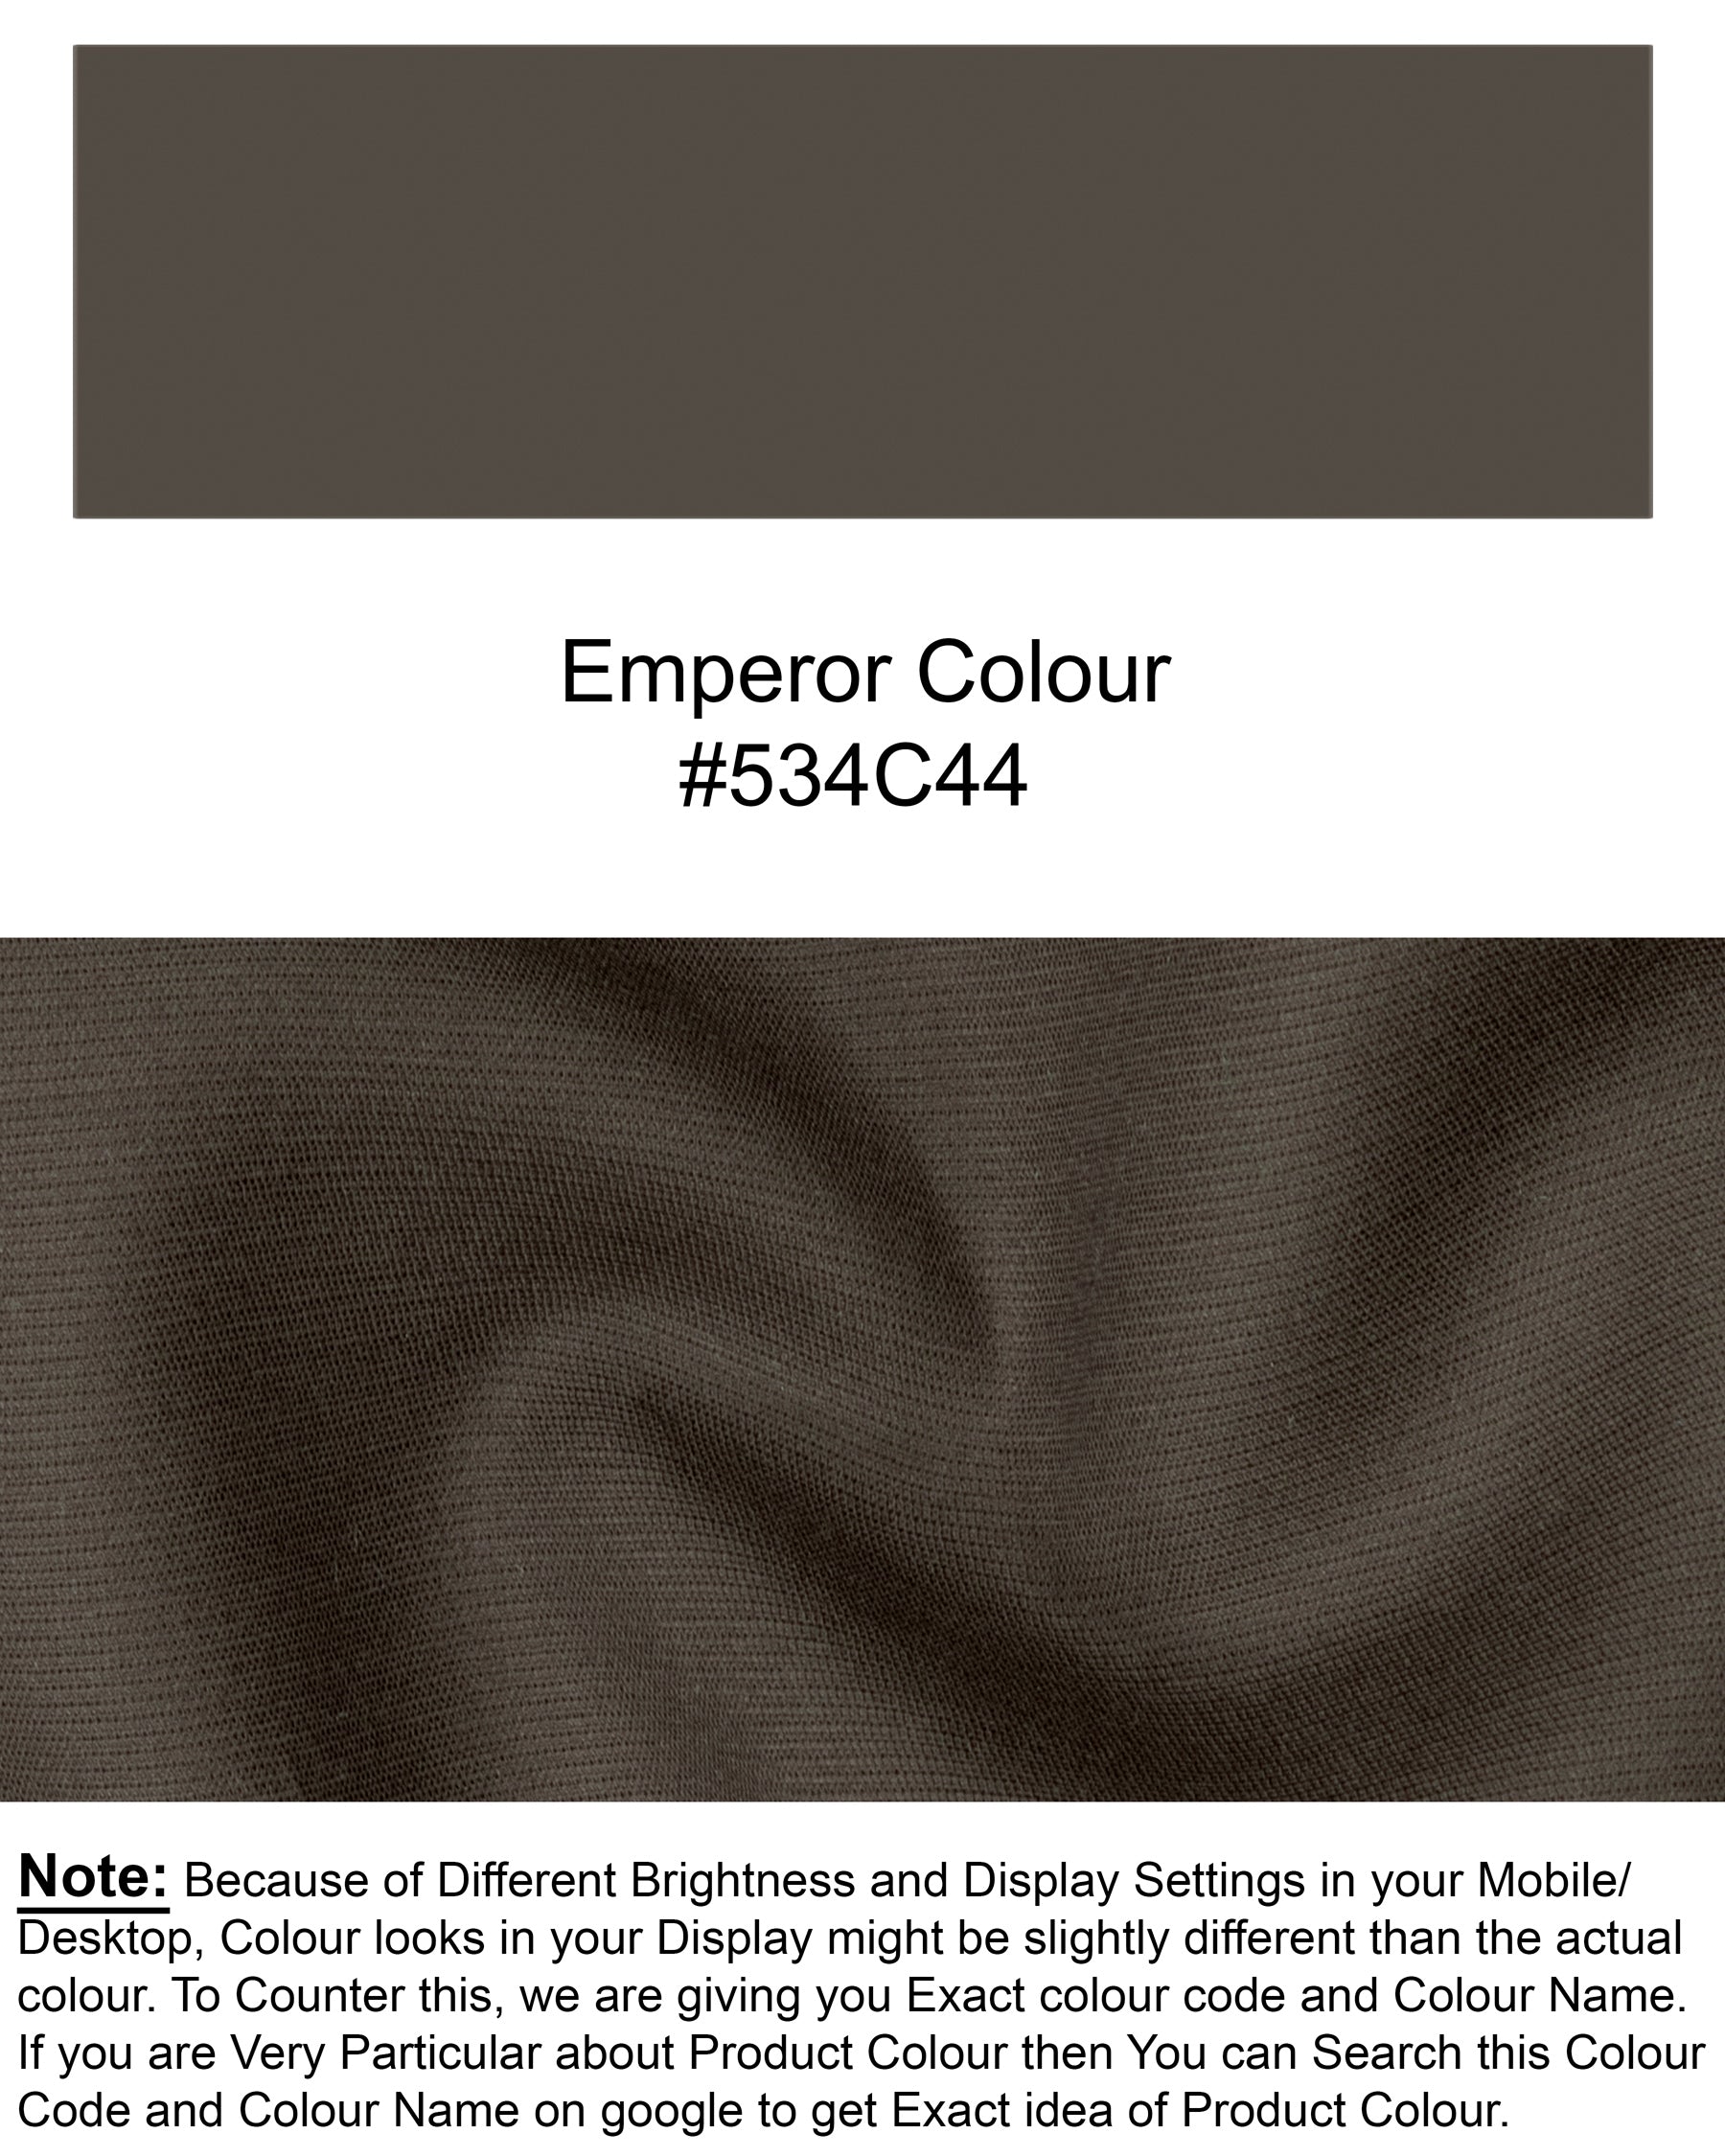 Emperor Brown Premium Cotton Blazer BL1259-SBP-36, BL1259-SBP-38, BL1259-SBP-40, BL1259-SBP-42, BL1259-SBP-44, BL1259-SBP-46, BL1259-SBP-48, BL1259-SBP-50, BL1259-SBP-52, BL1259-SBP-54, BL1259-SBP-56, BL1259-SBP-58, BL1259-SBP-60